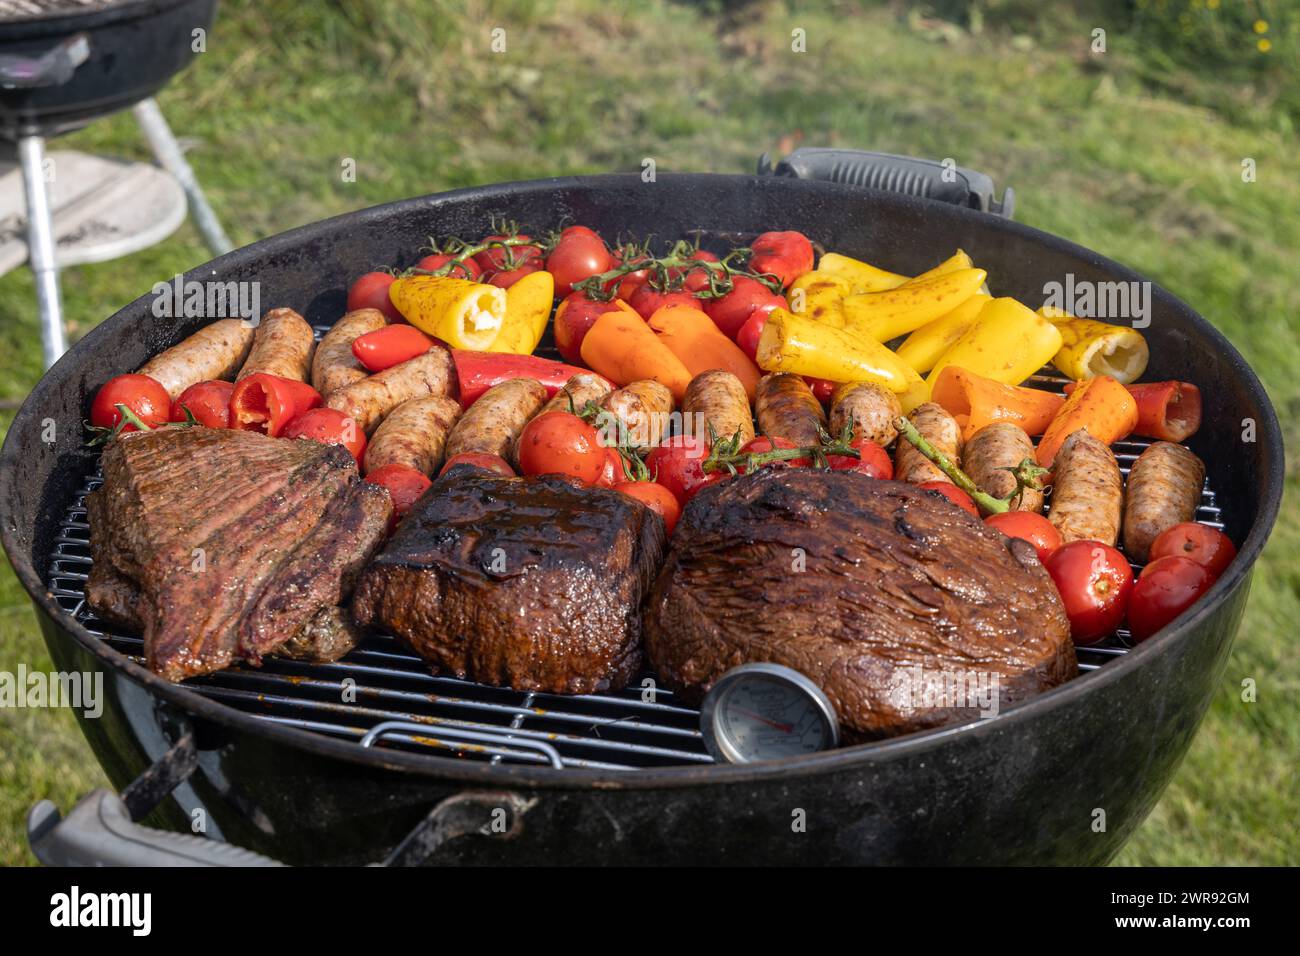 Griller des saucisses de viande et des légumes au charbon de bois à l'extérieur. Thermomètre dans la viande visible Banque D'Images